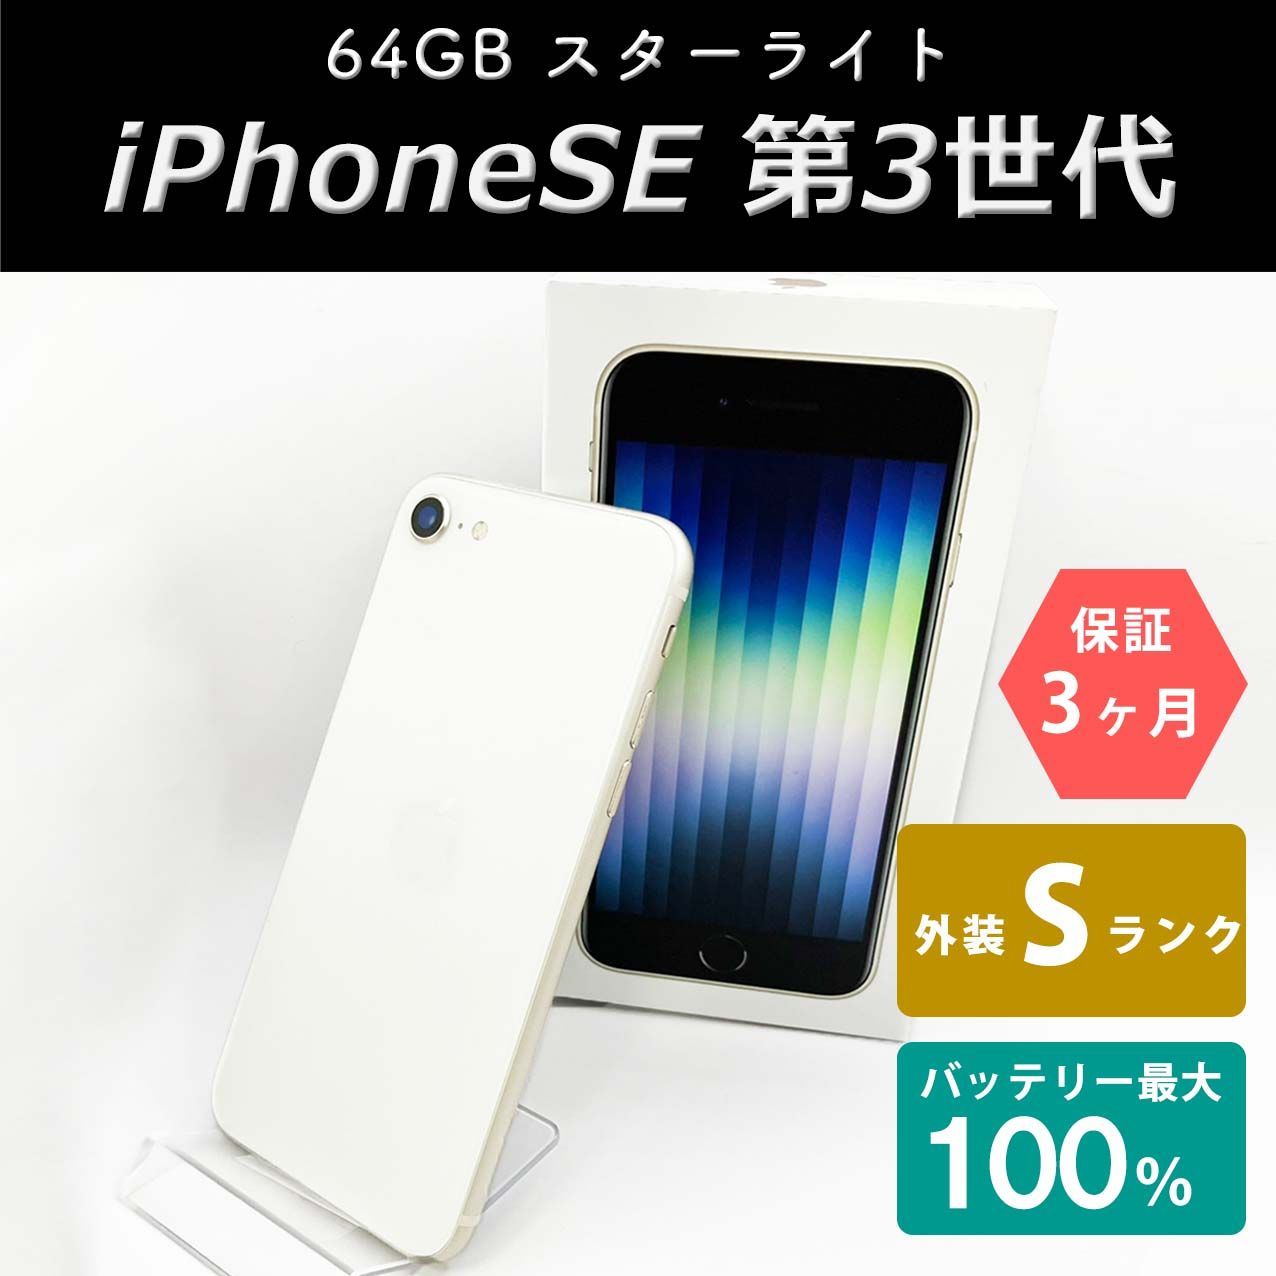 iPhoneSE(第3世代) 64GB スターライト Sランク 未使用品 SIMフリー